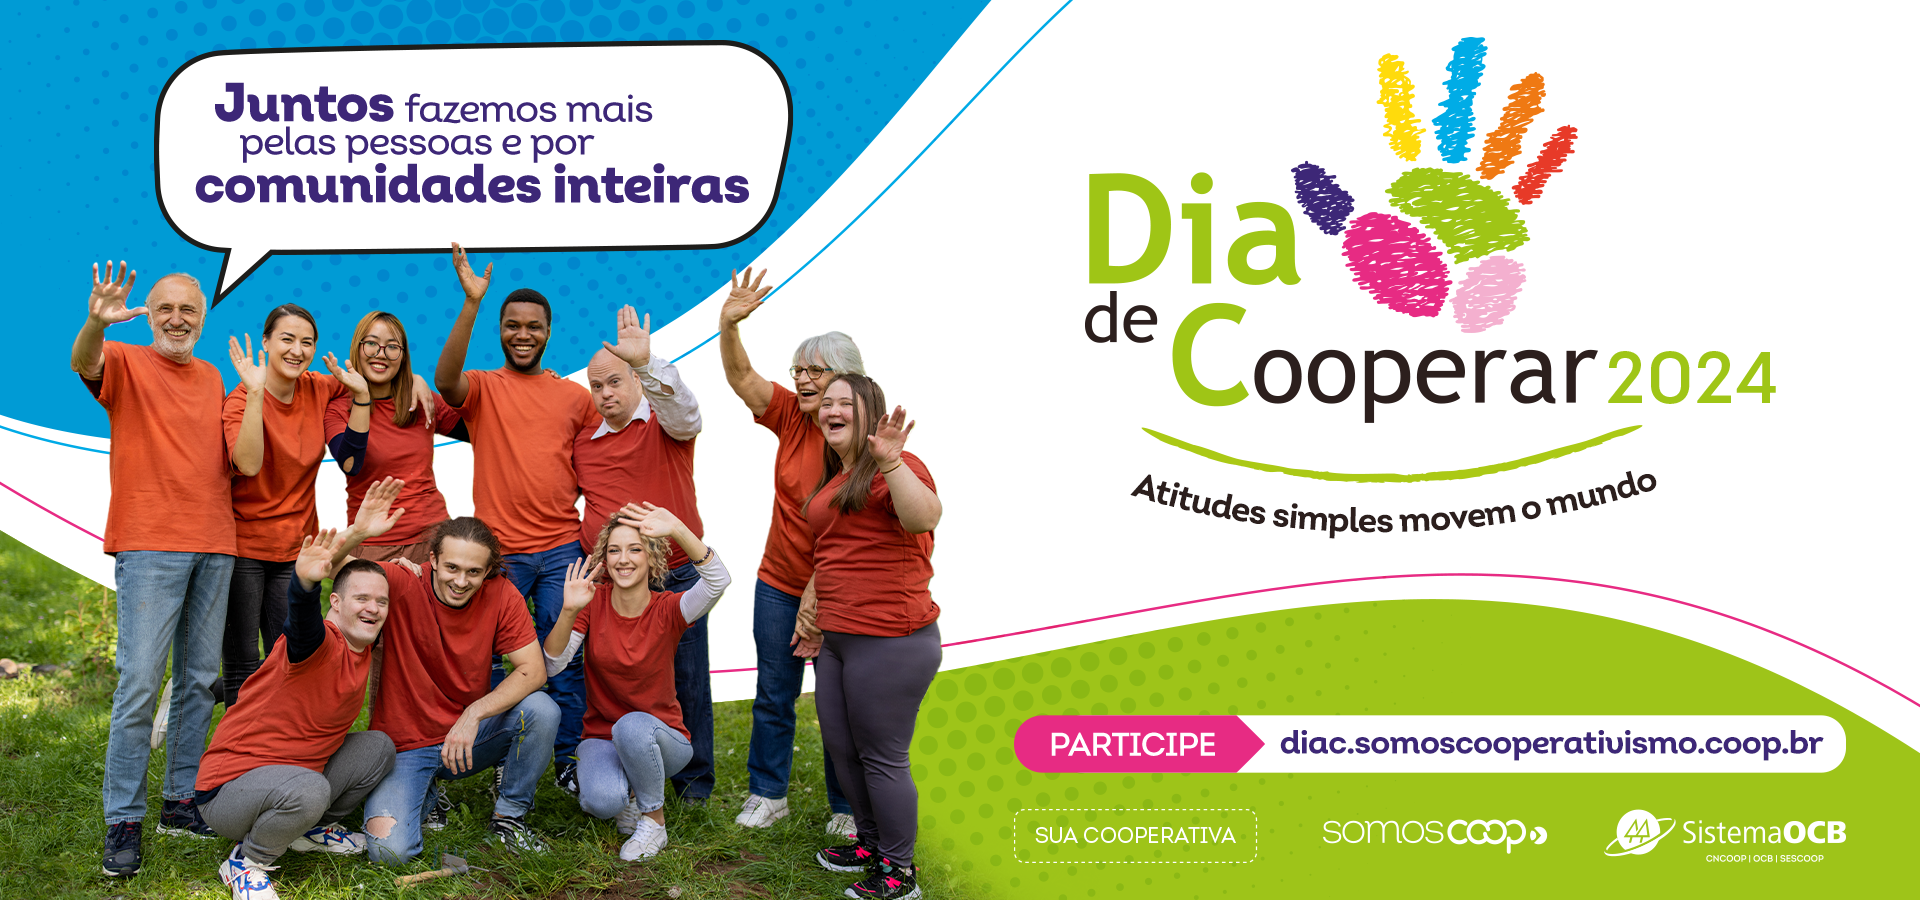 Dia C: cooperativas promovem solidariedade em todo o Brasil